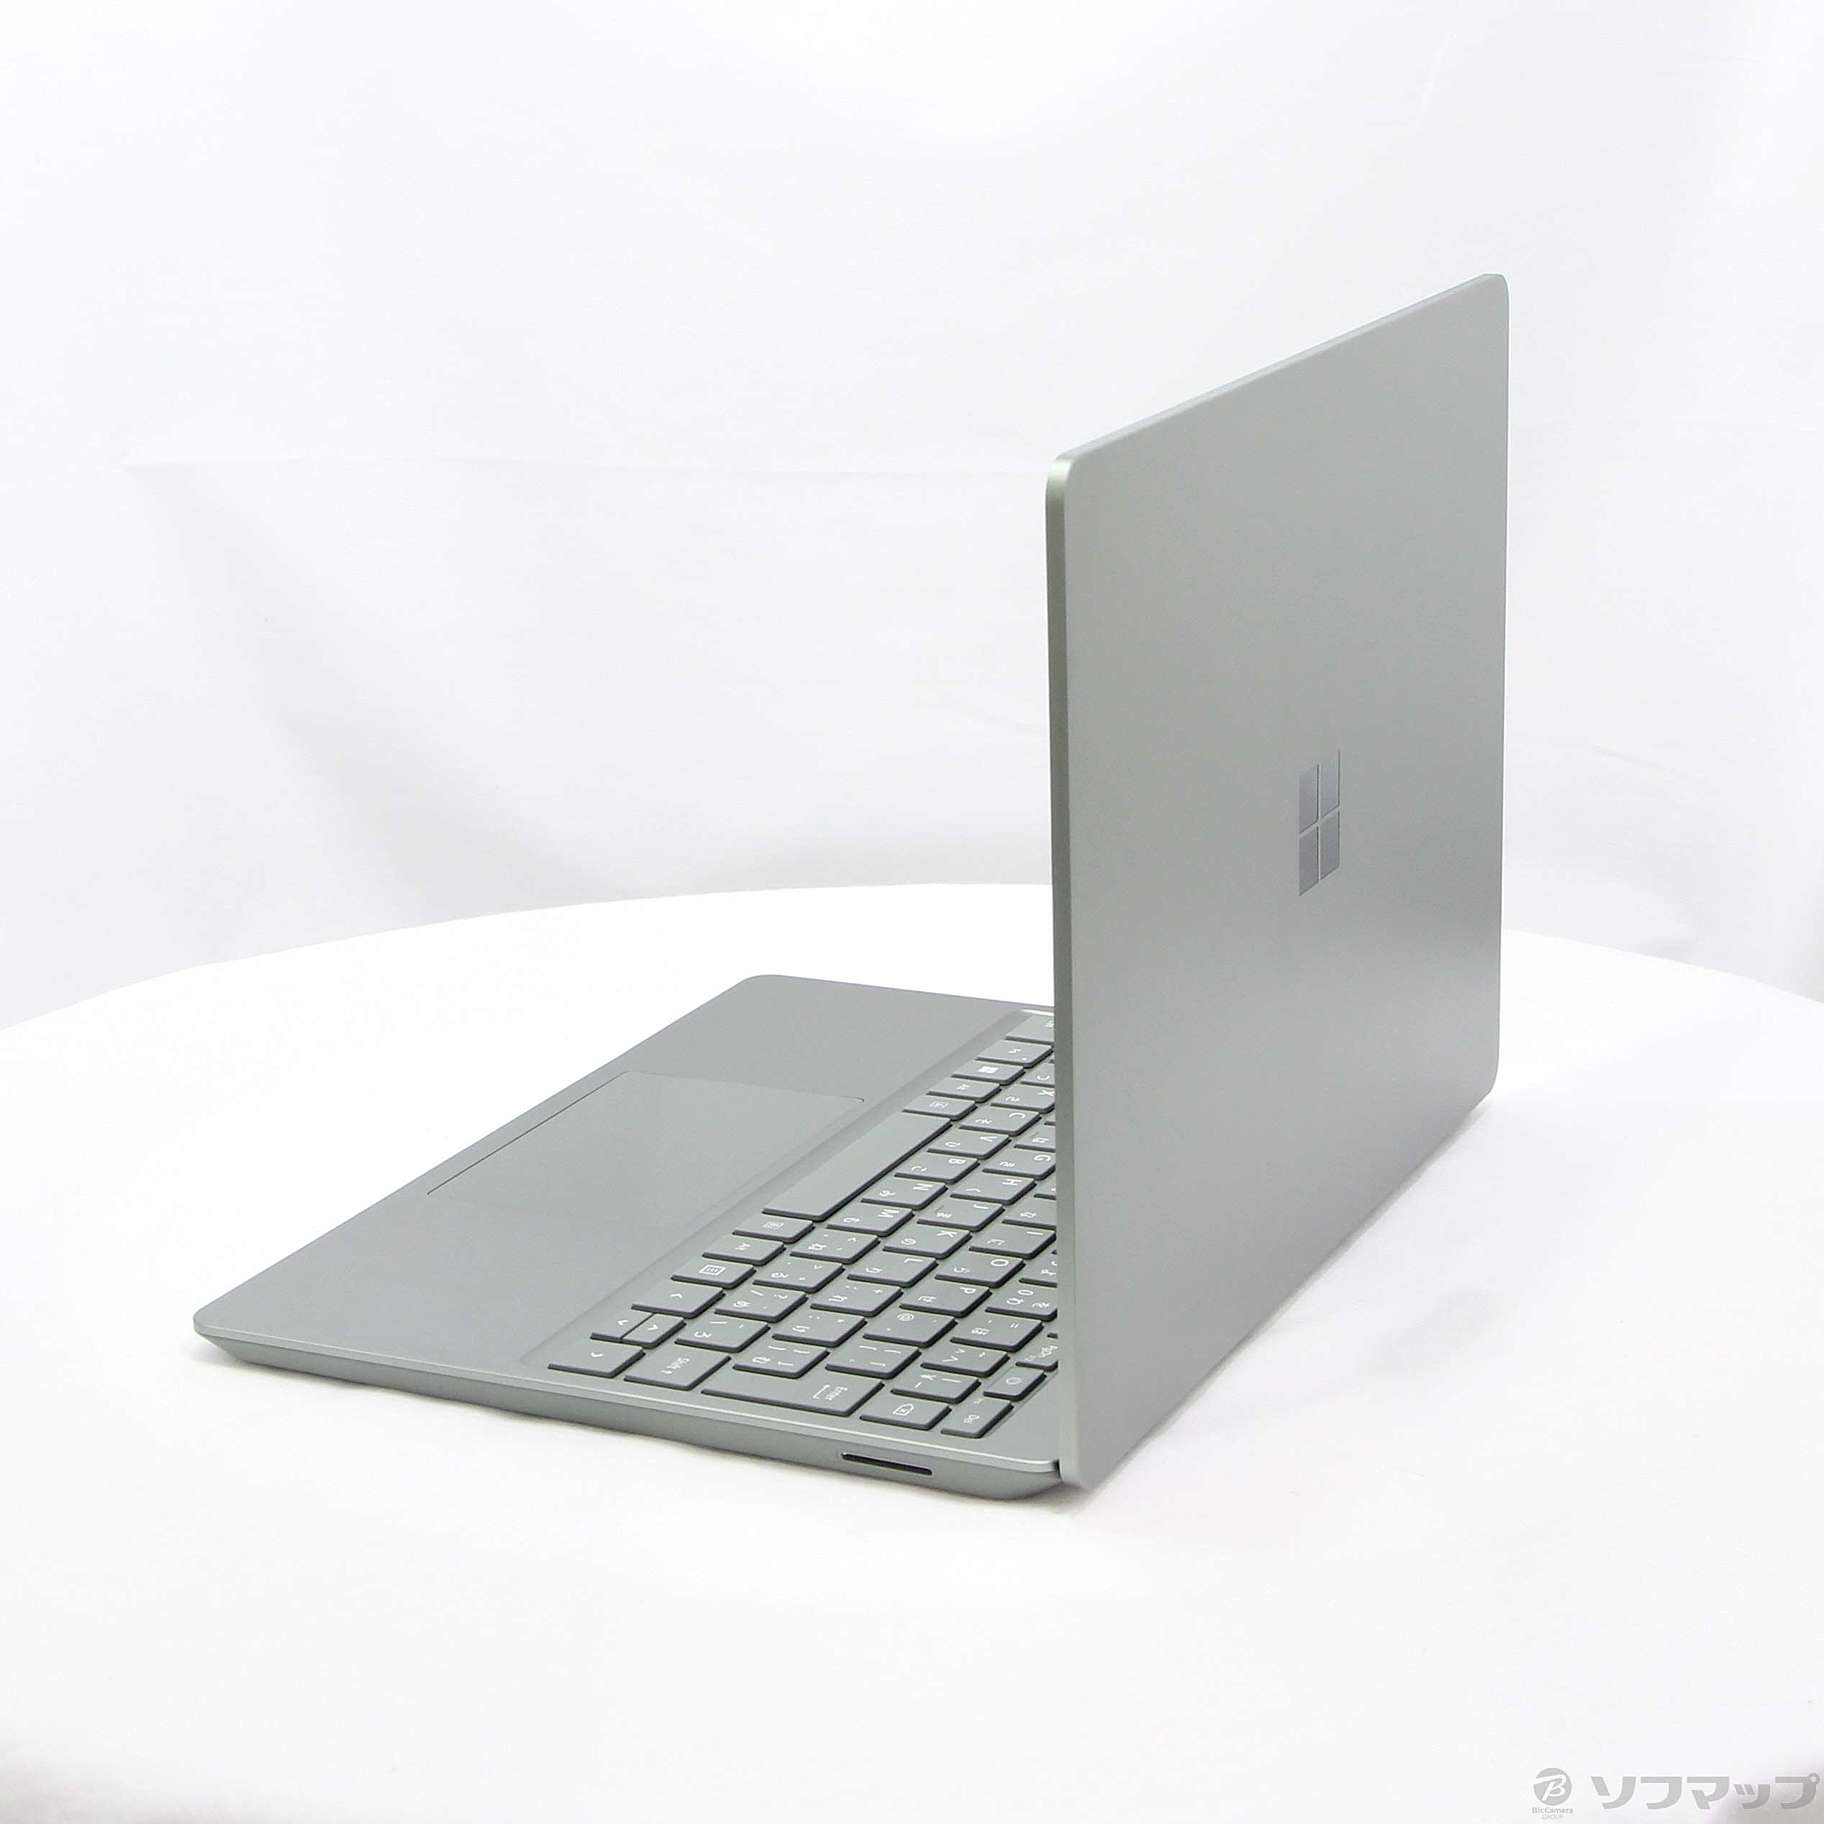 〔展示品〕 Surface Laptop Go 2 〔Core i5／16GB／SSD256GB〕 VUQ-00003 セージ